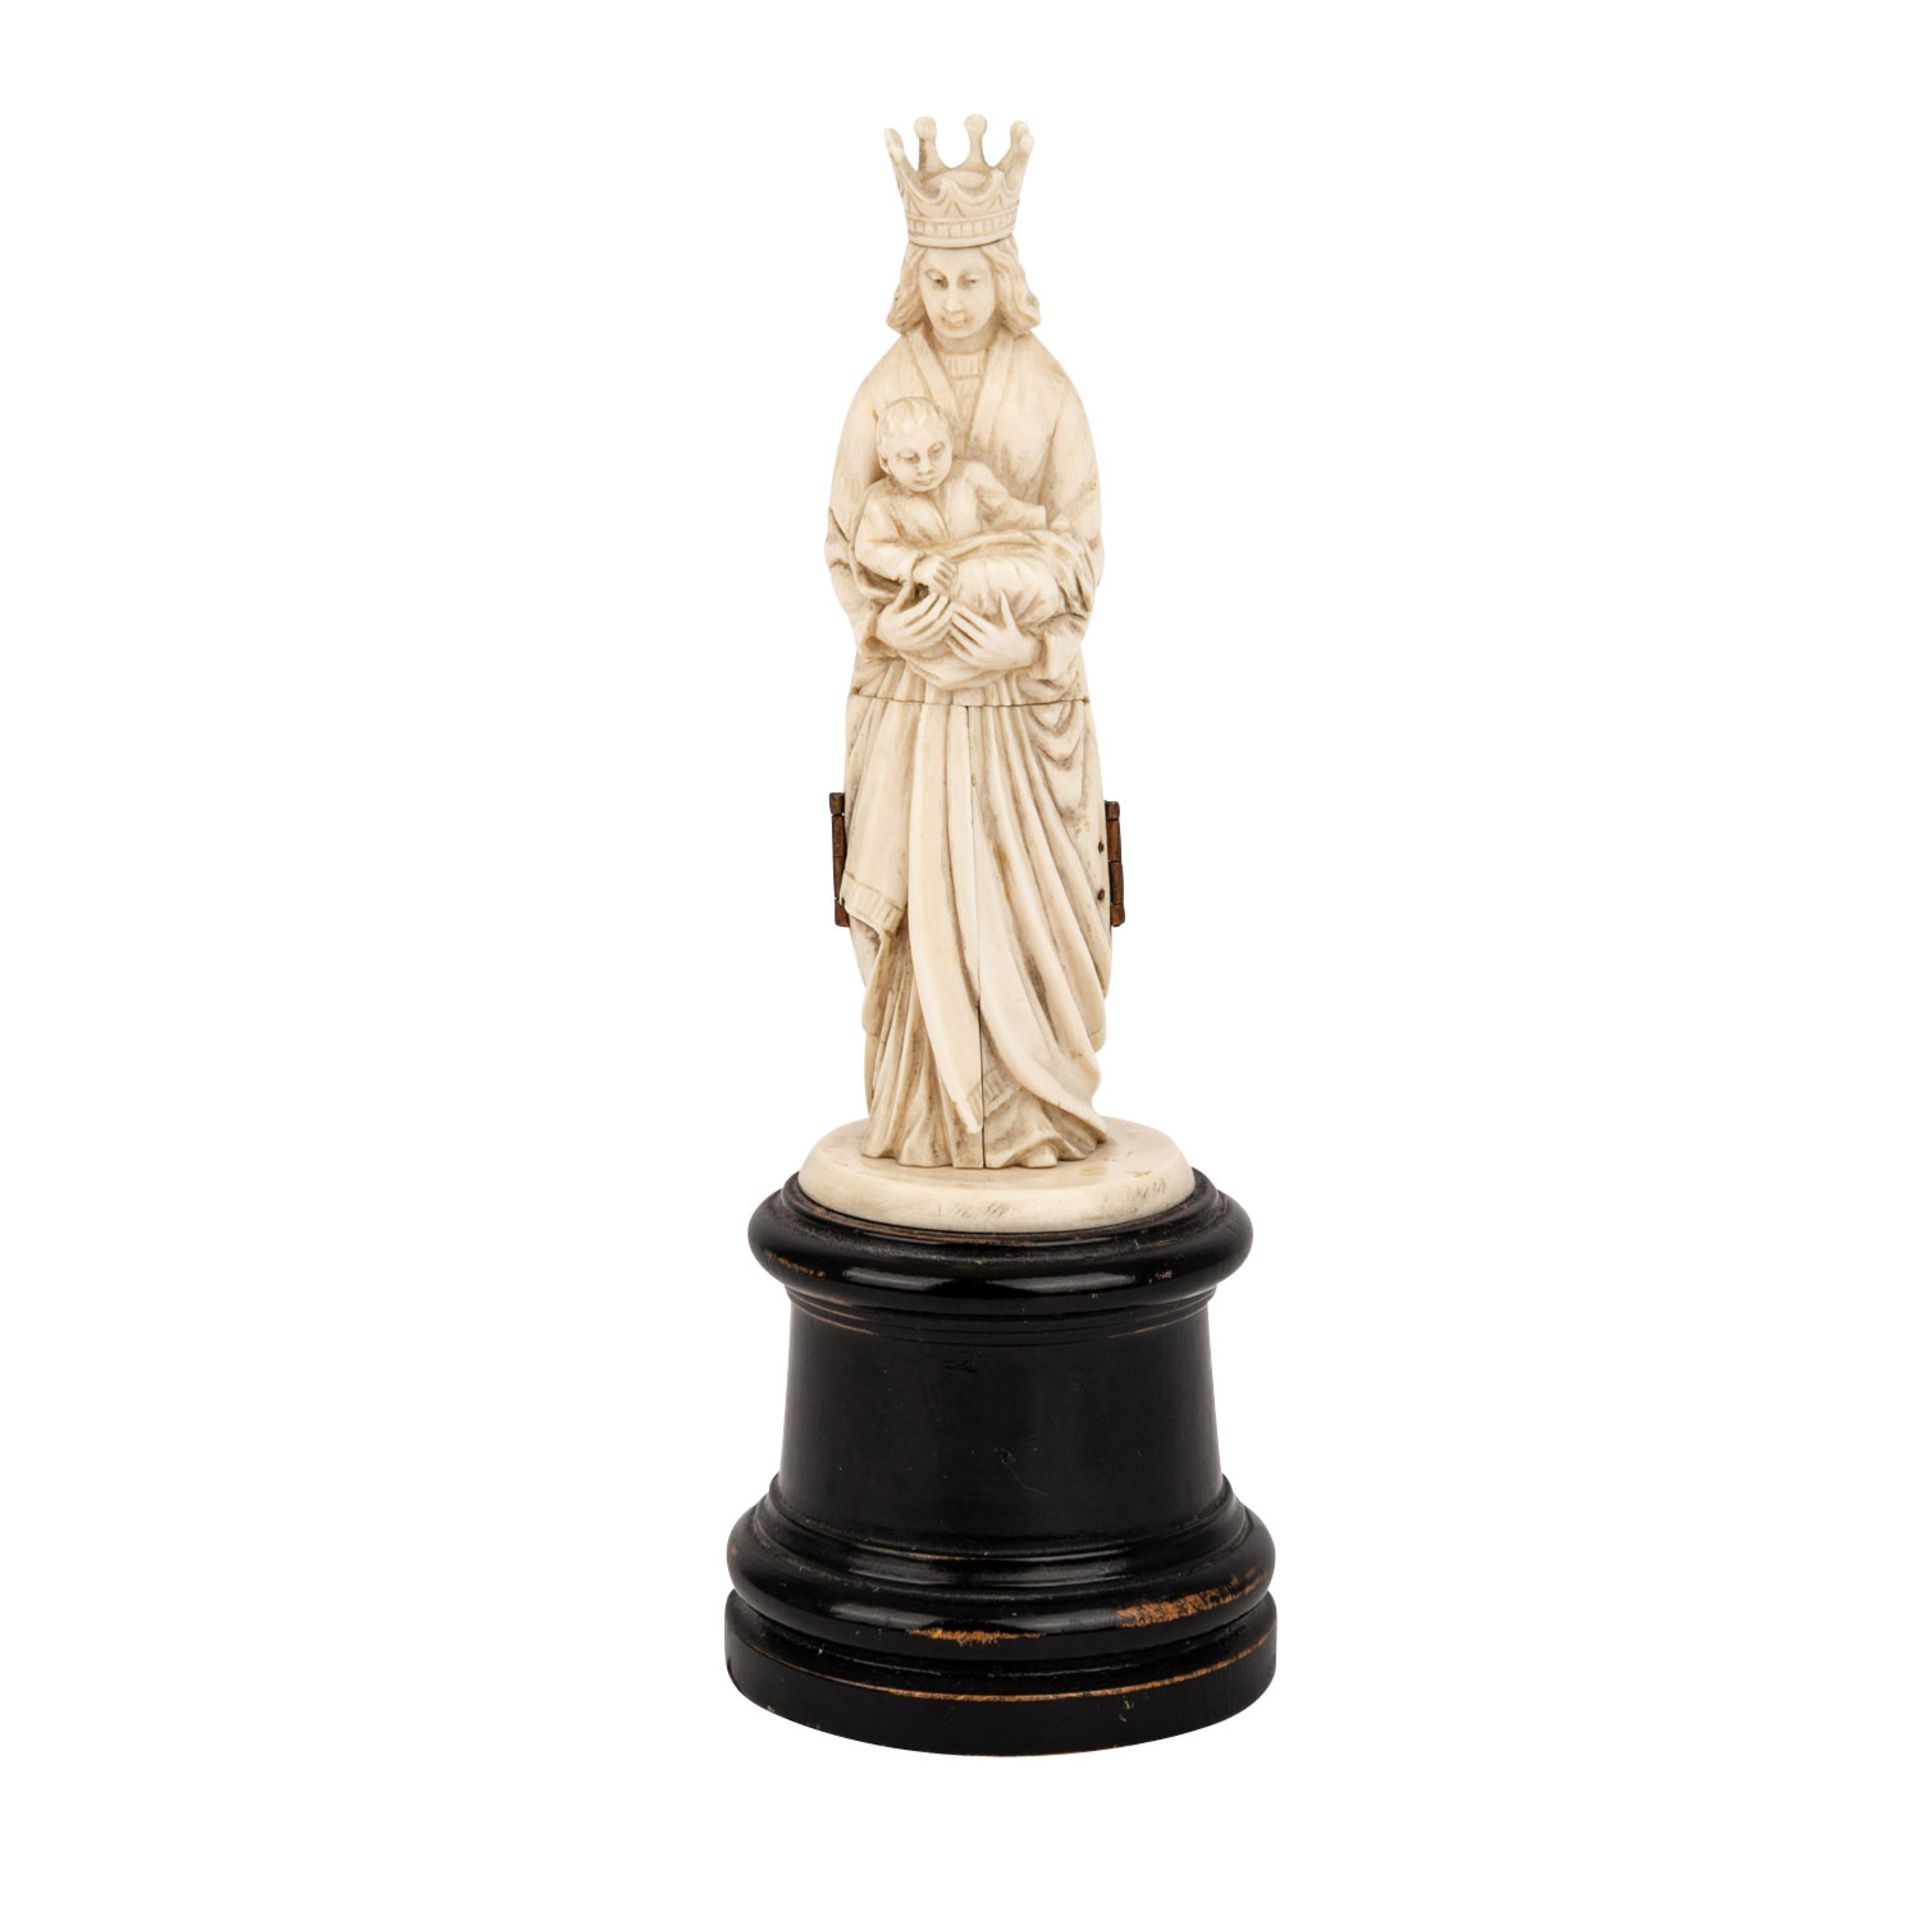 Gottesmutter-Miniatur aus Elfenbein, 19. Jh.. Die untere Figurenhälfte ist mit Scharnieren zum